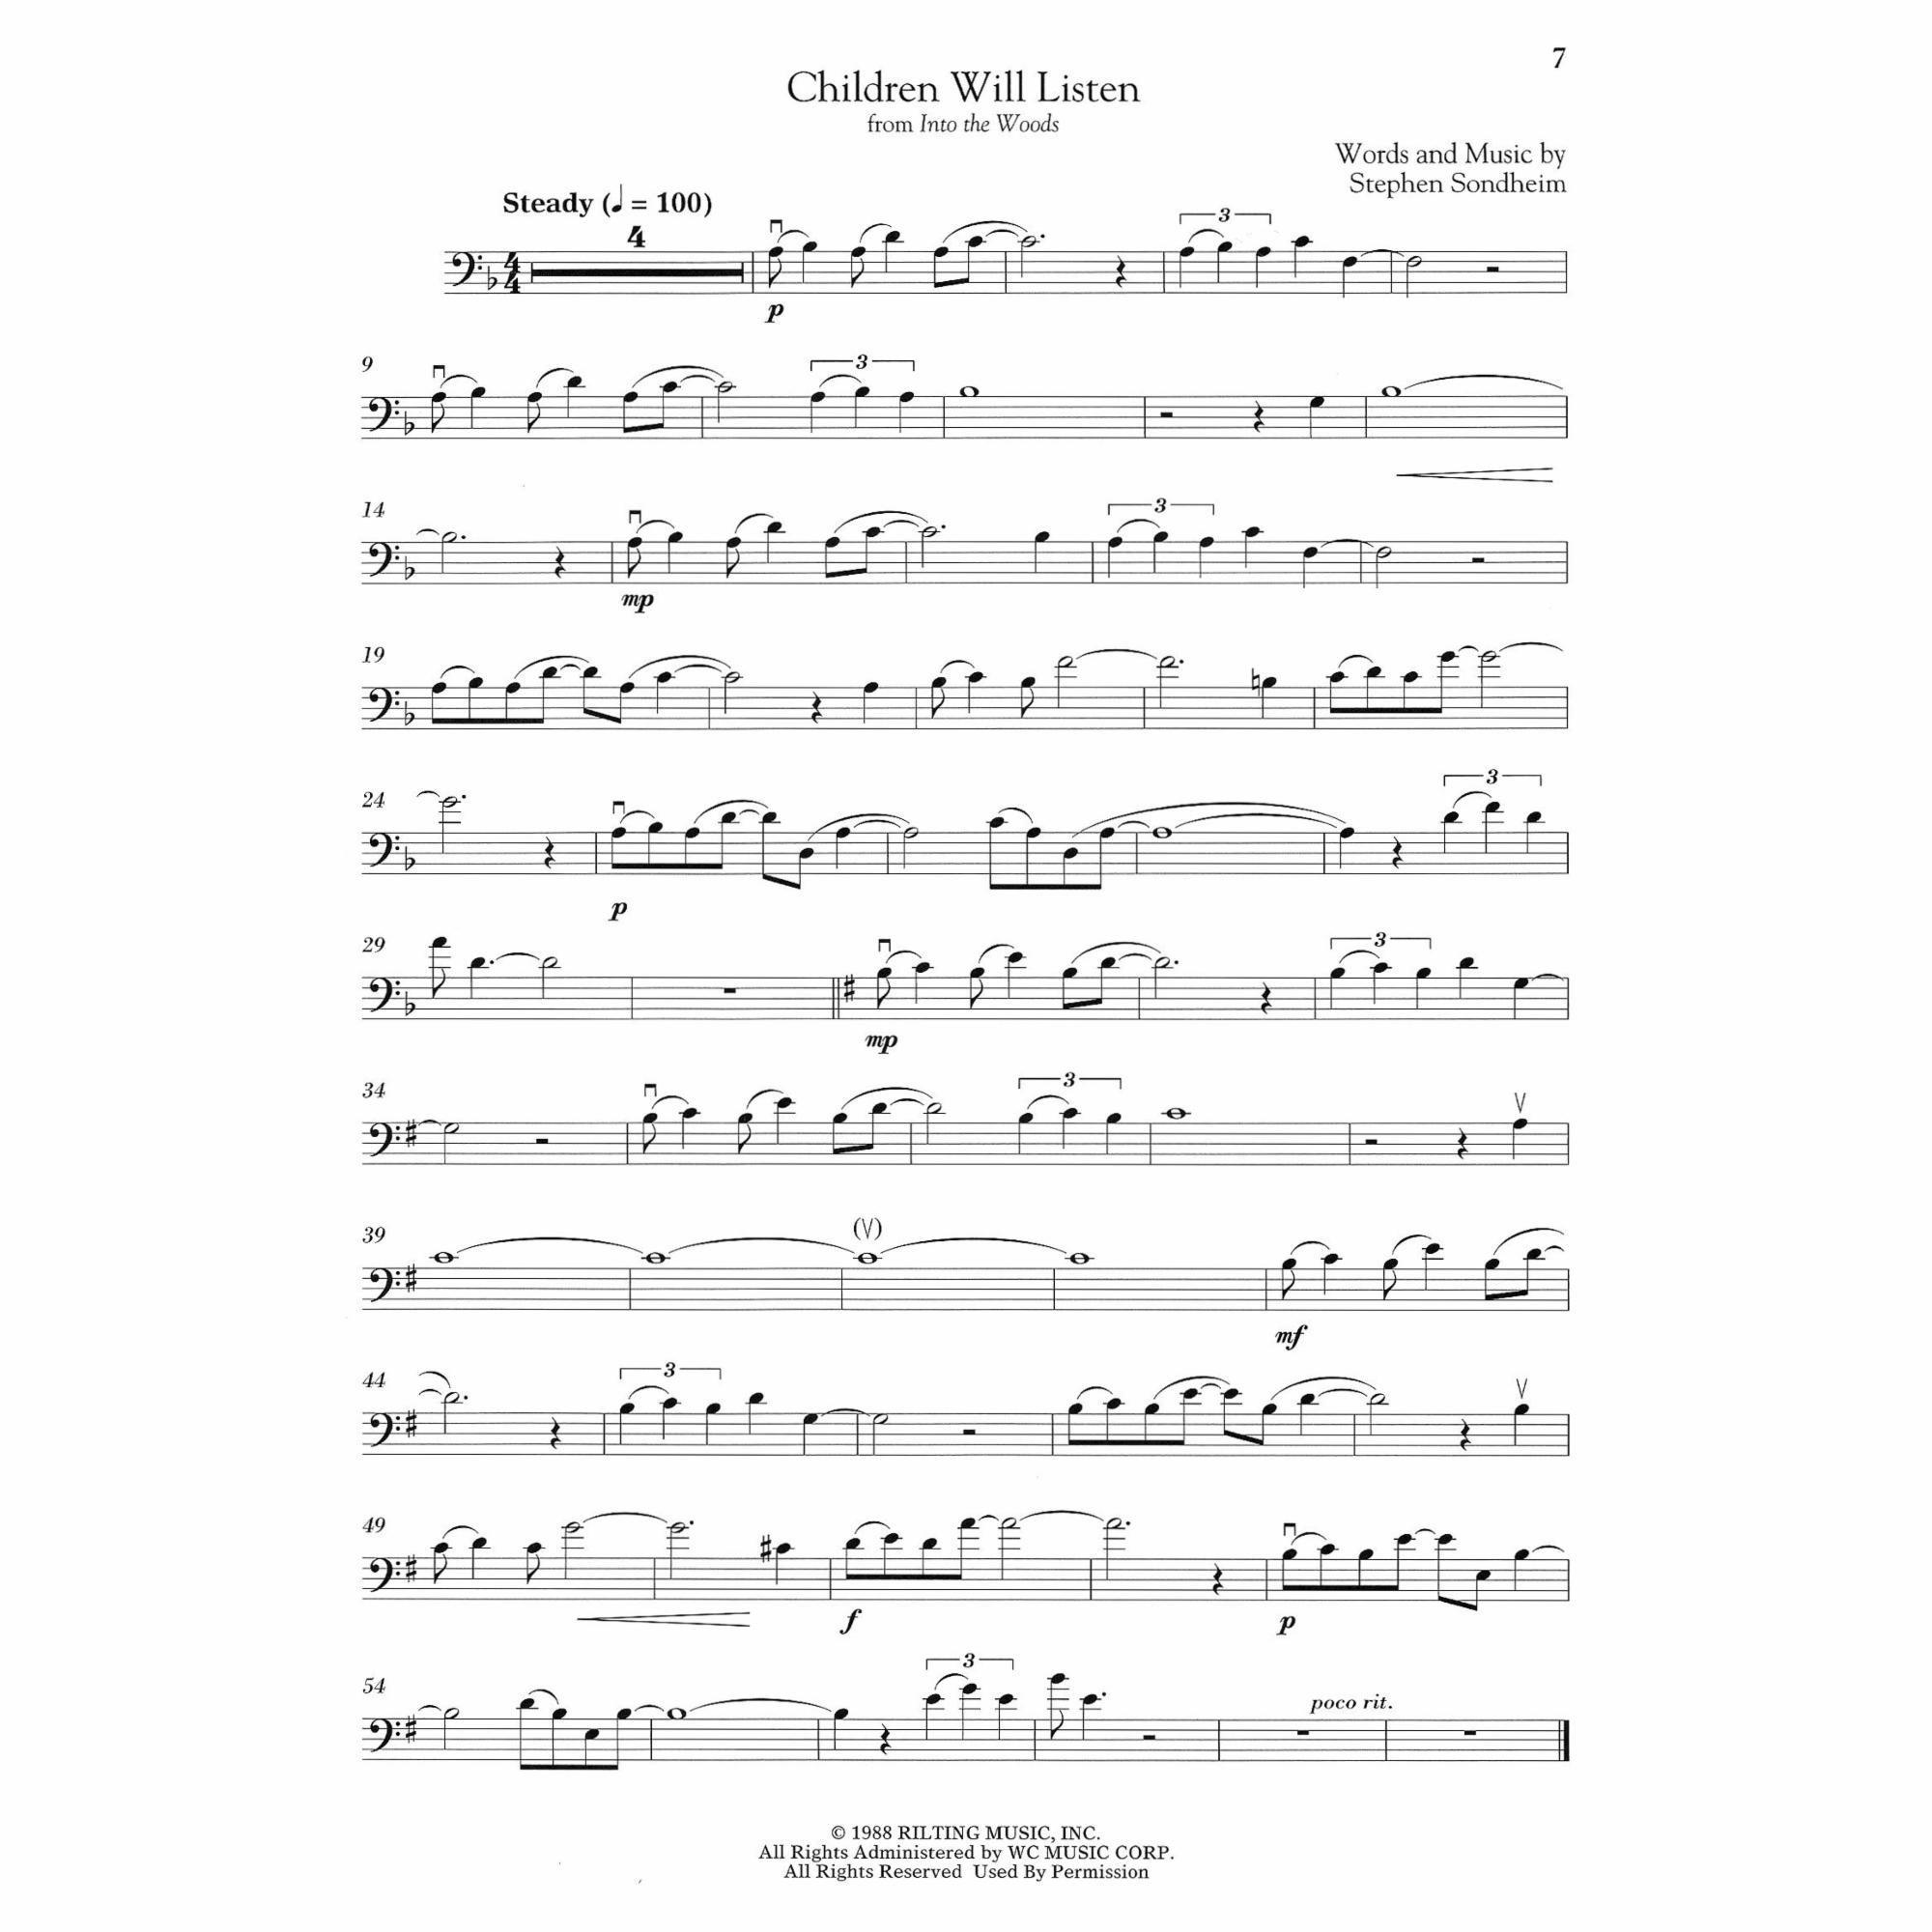 Sample: Cello (Pg. 7)